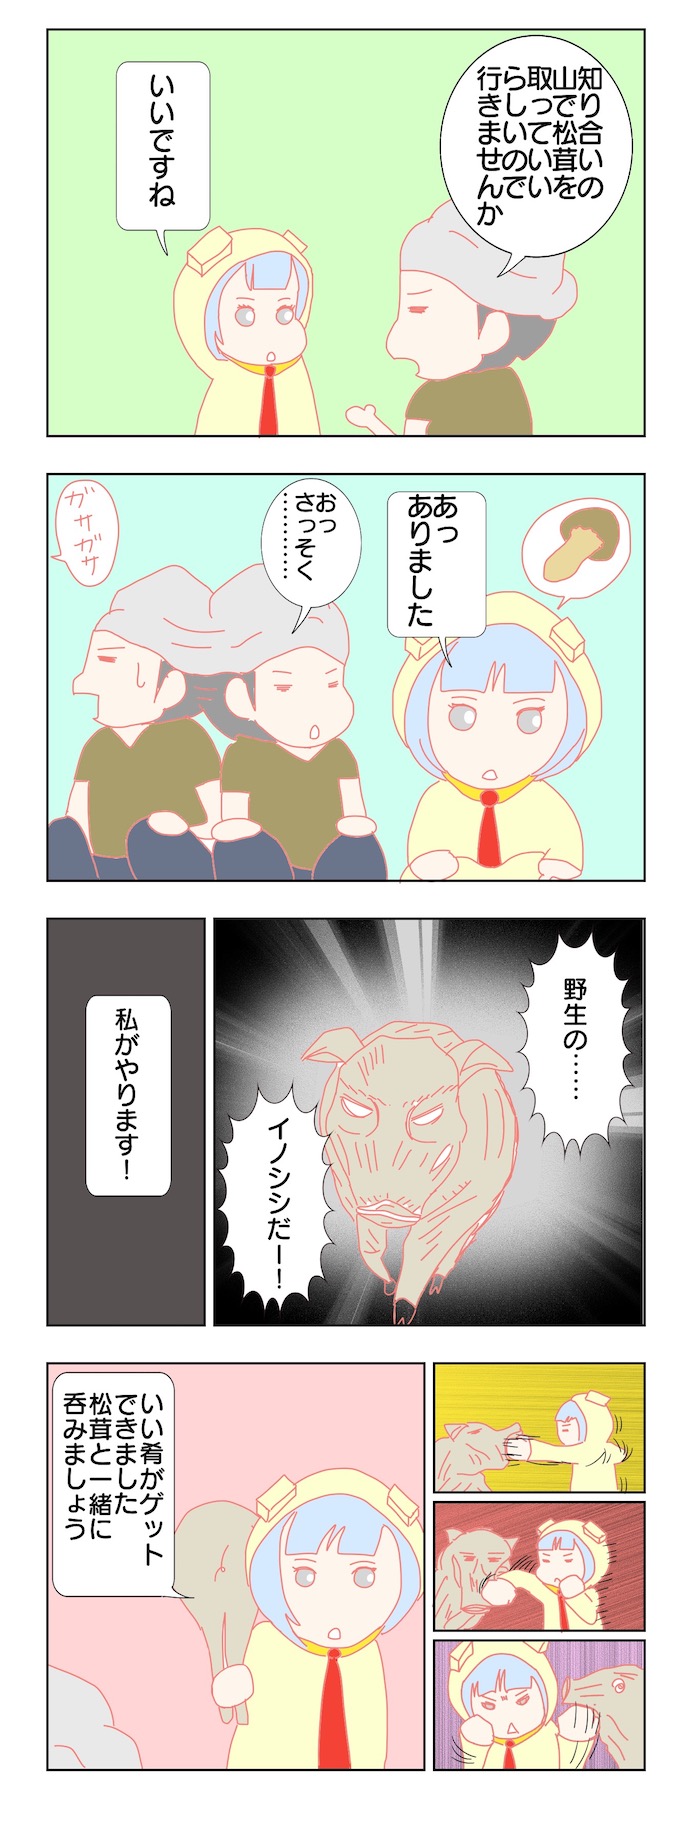 キムケン四コマ漫画